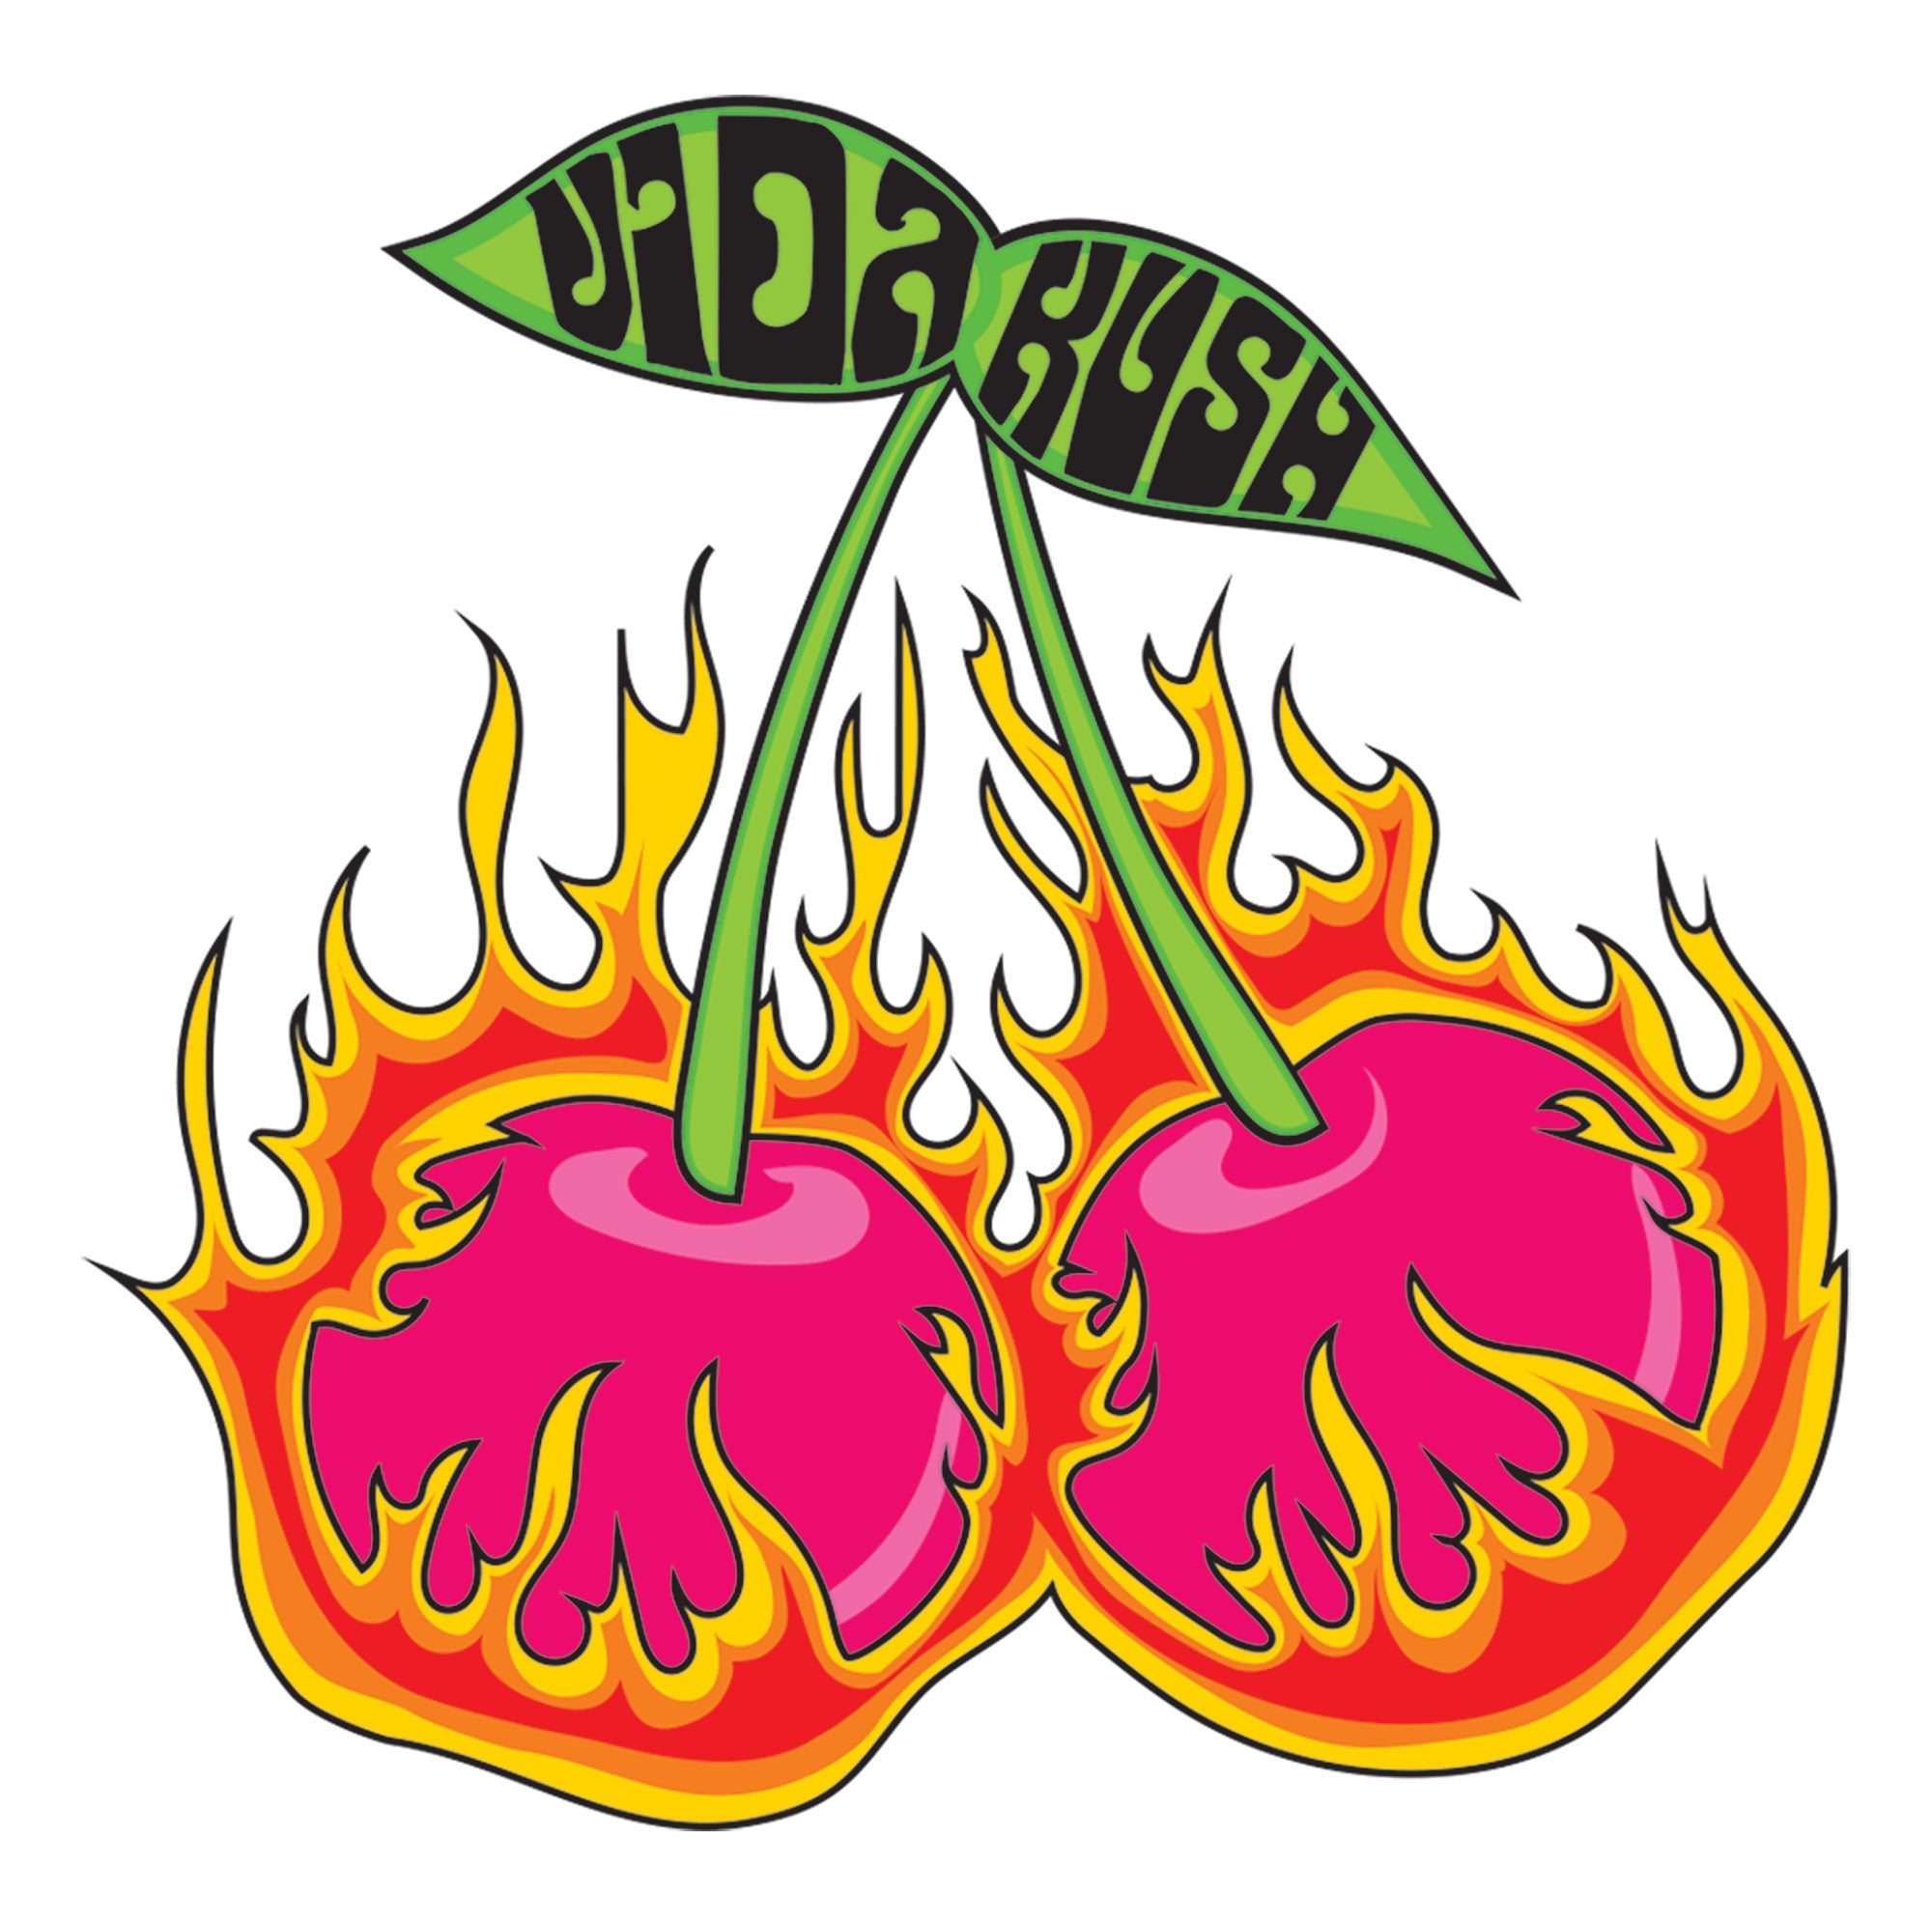 Flaming Cherries Sticker – VidaKush